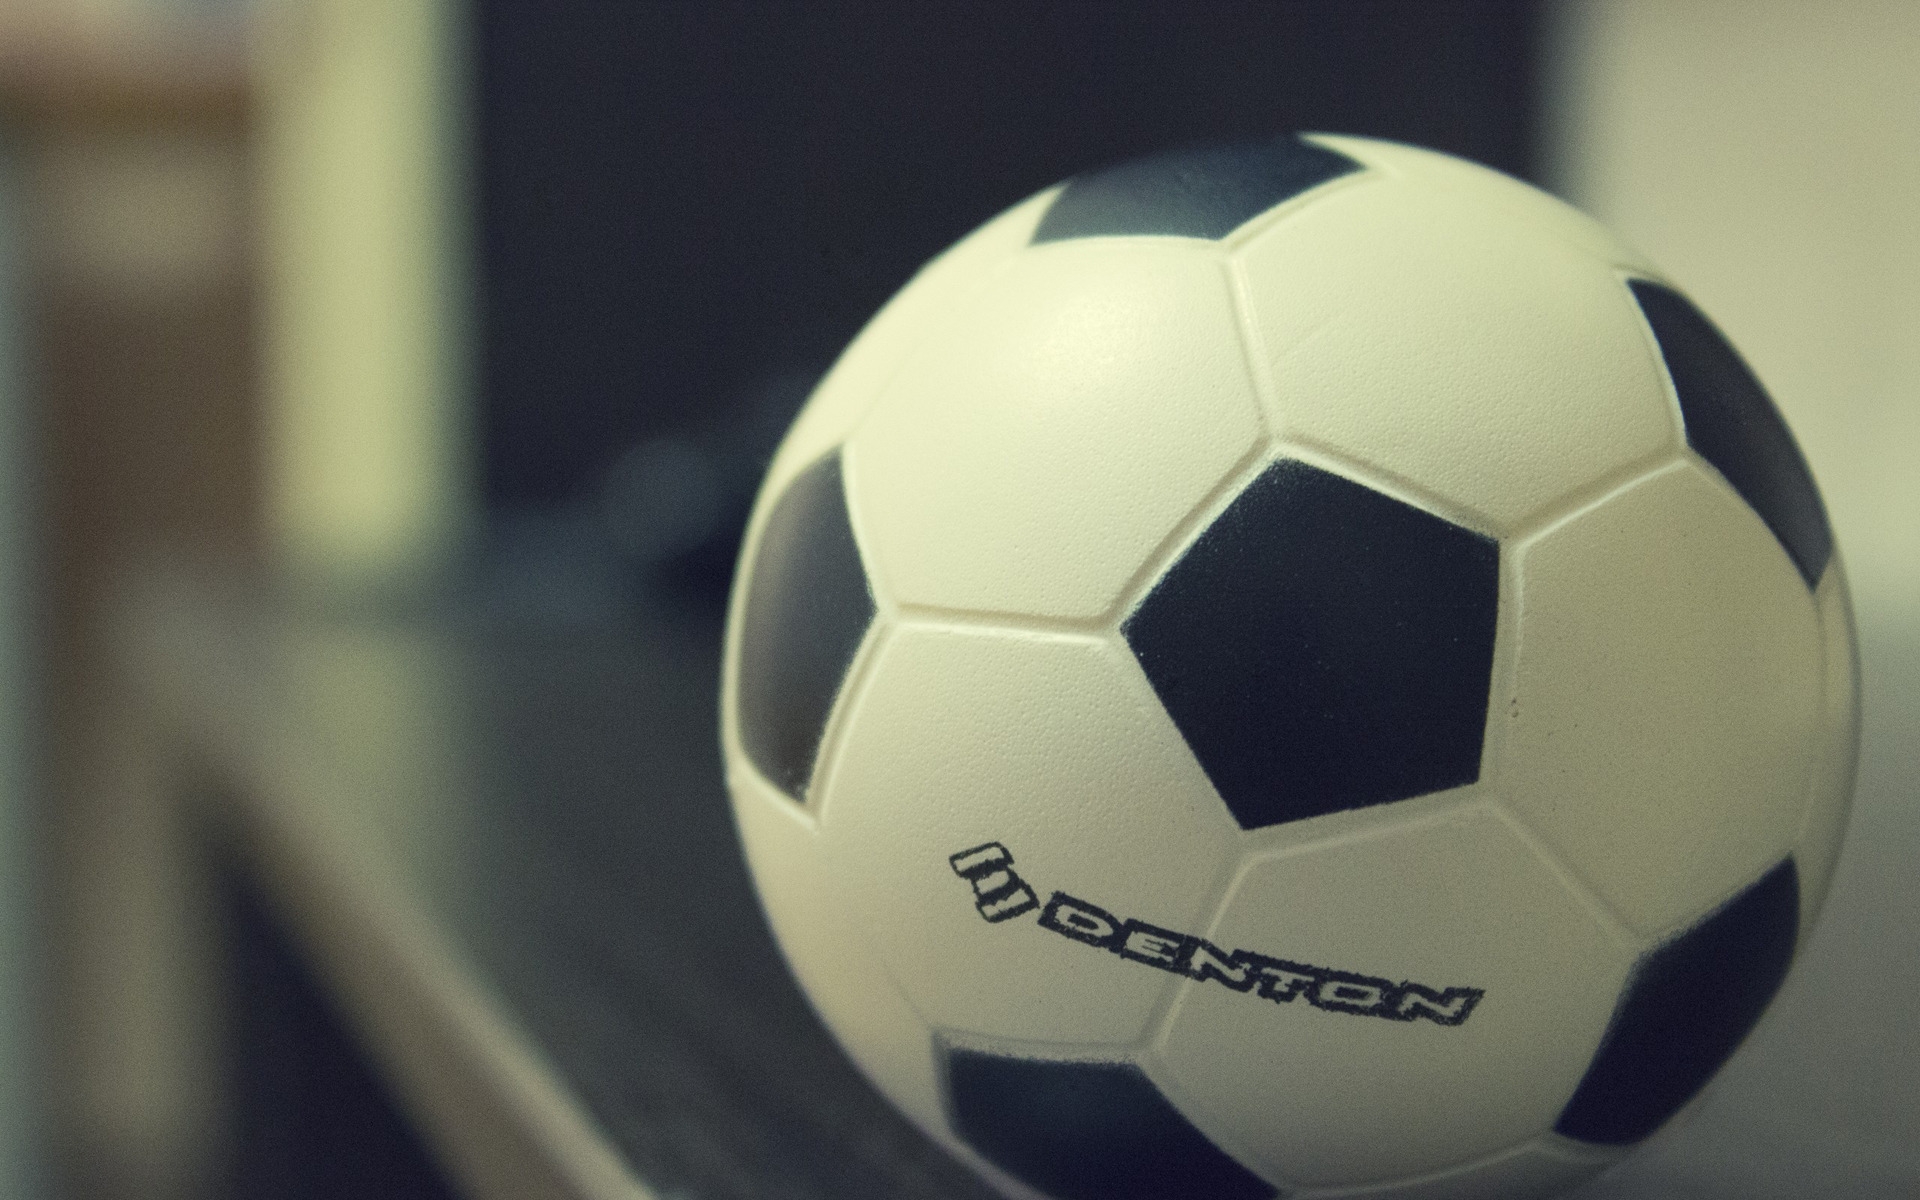 Denton Soccer Ball for 1920 x 1200 widescreen resolution